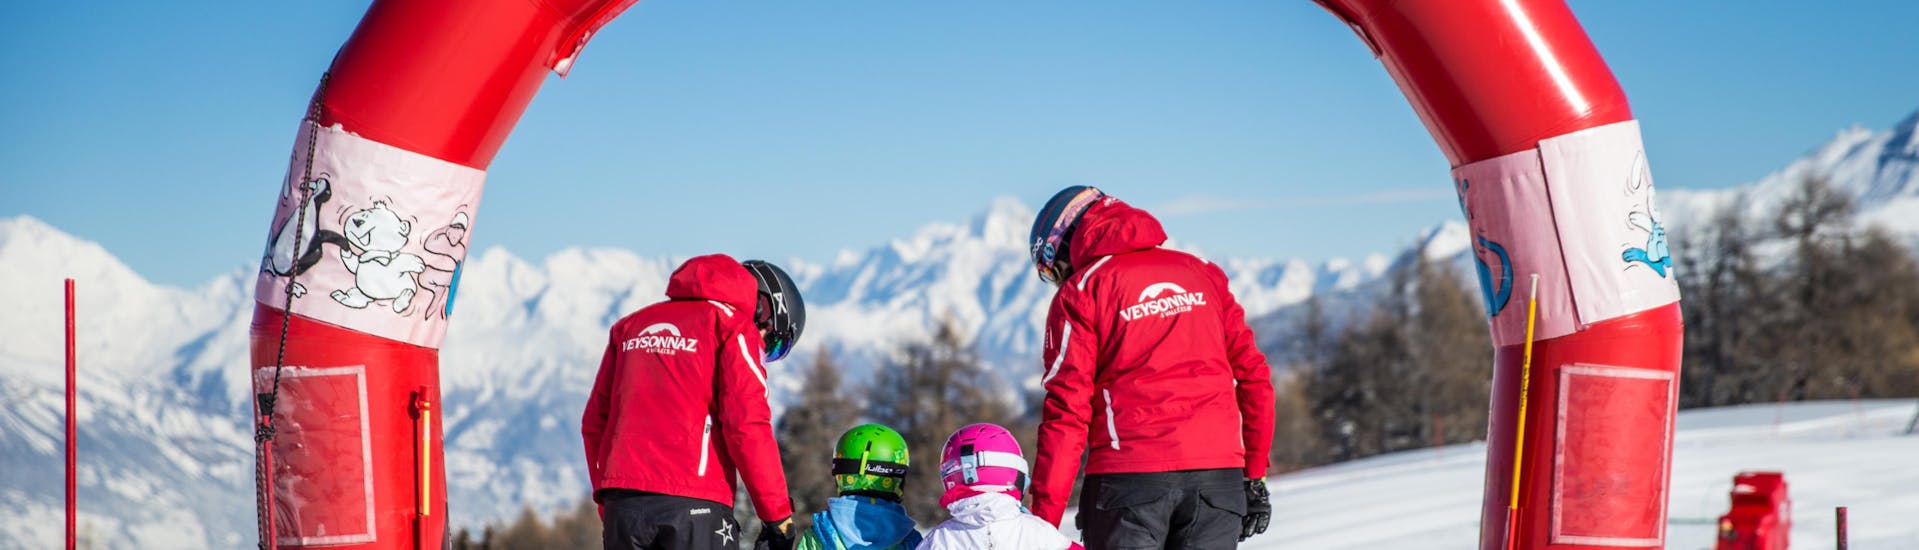 Privater Kinder-Skikurs ab 2 Jahren ohne Erfahrung.